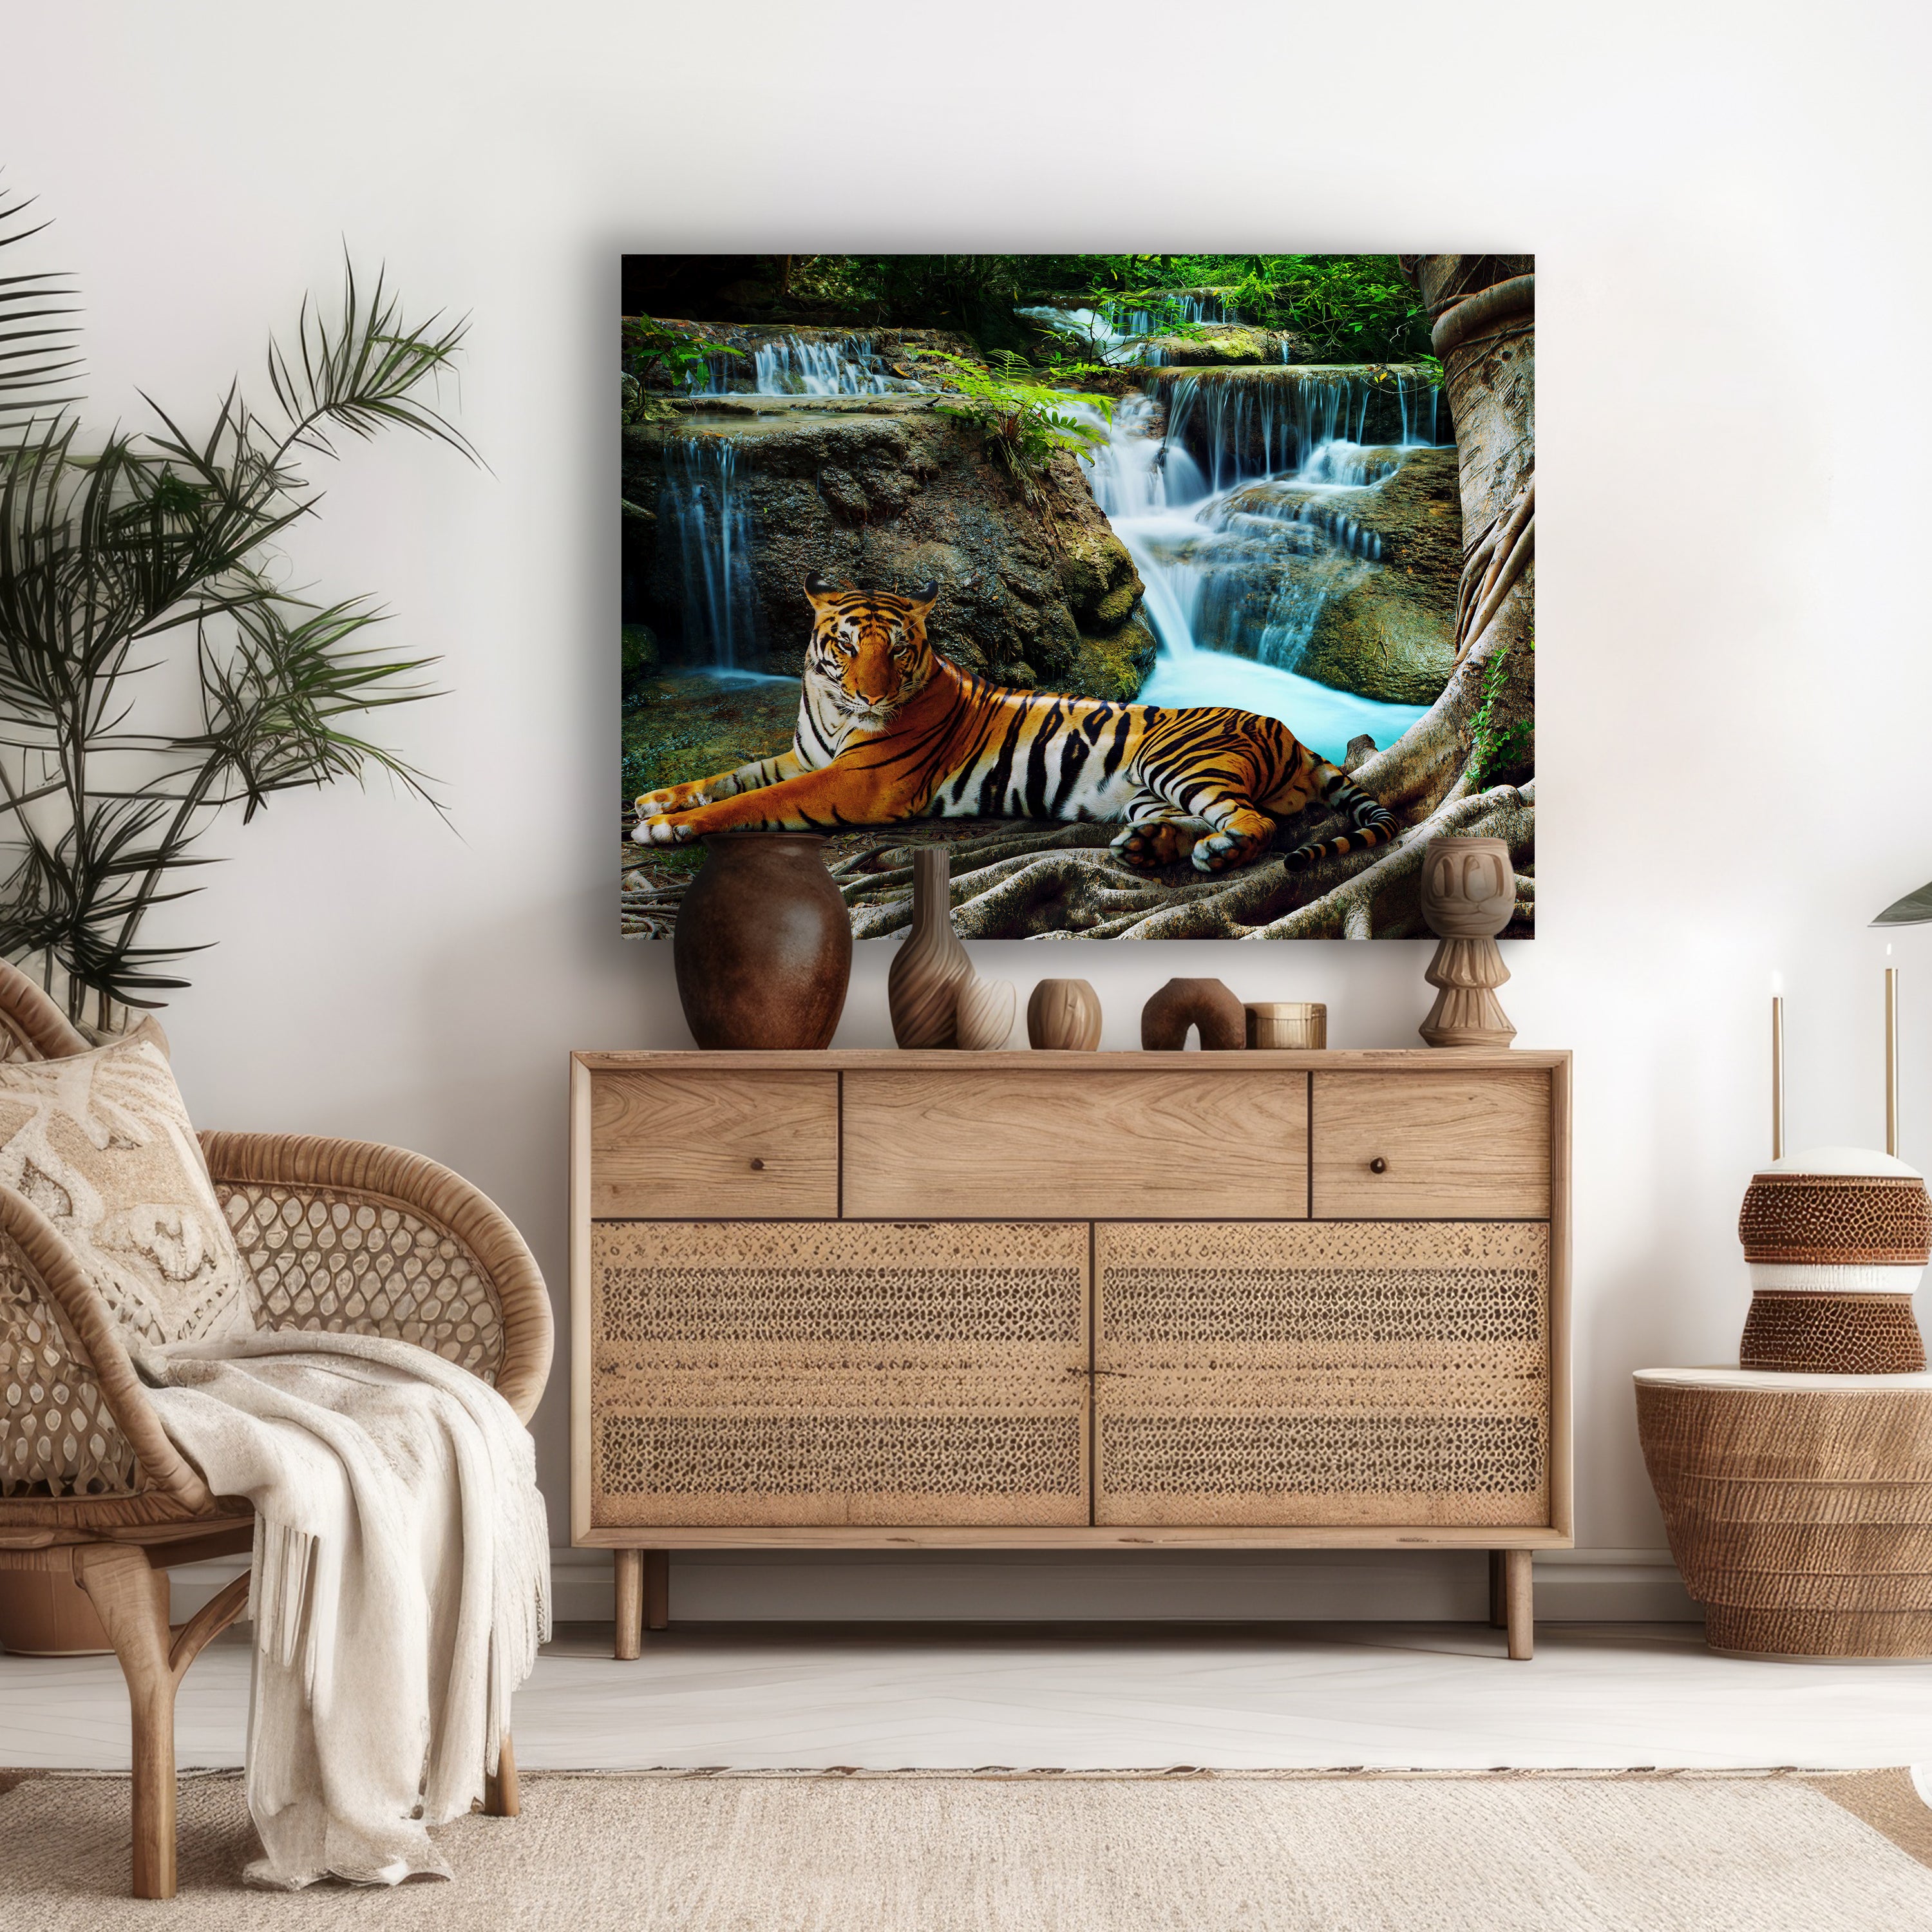 Leinwandbild Tiere, Querformat, Tiger Wasserfall M0098 kaufen - Bild 2